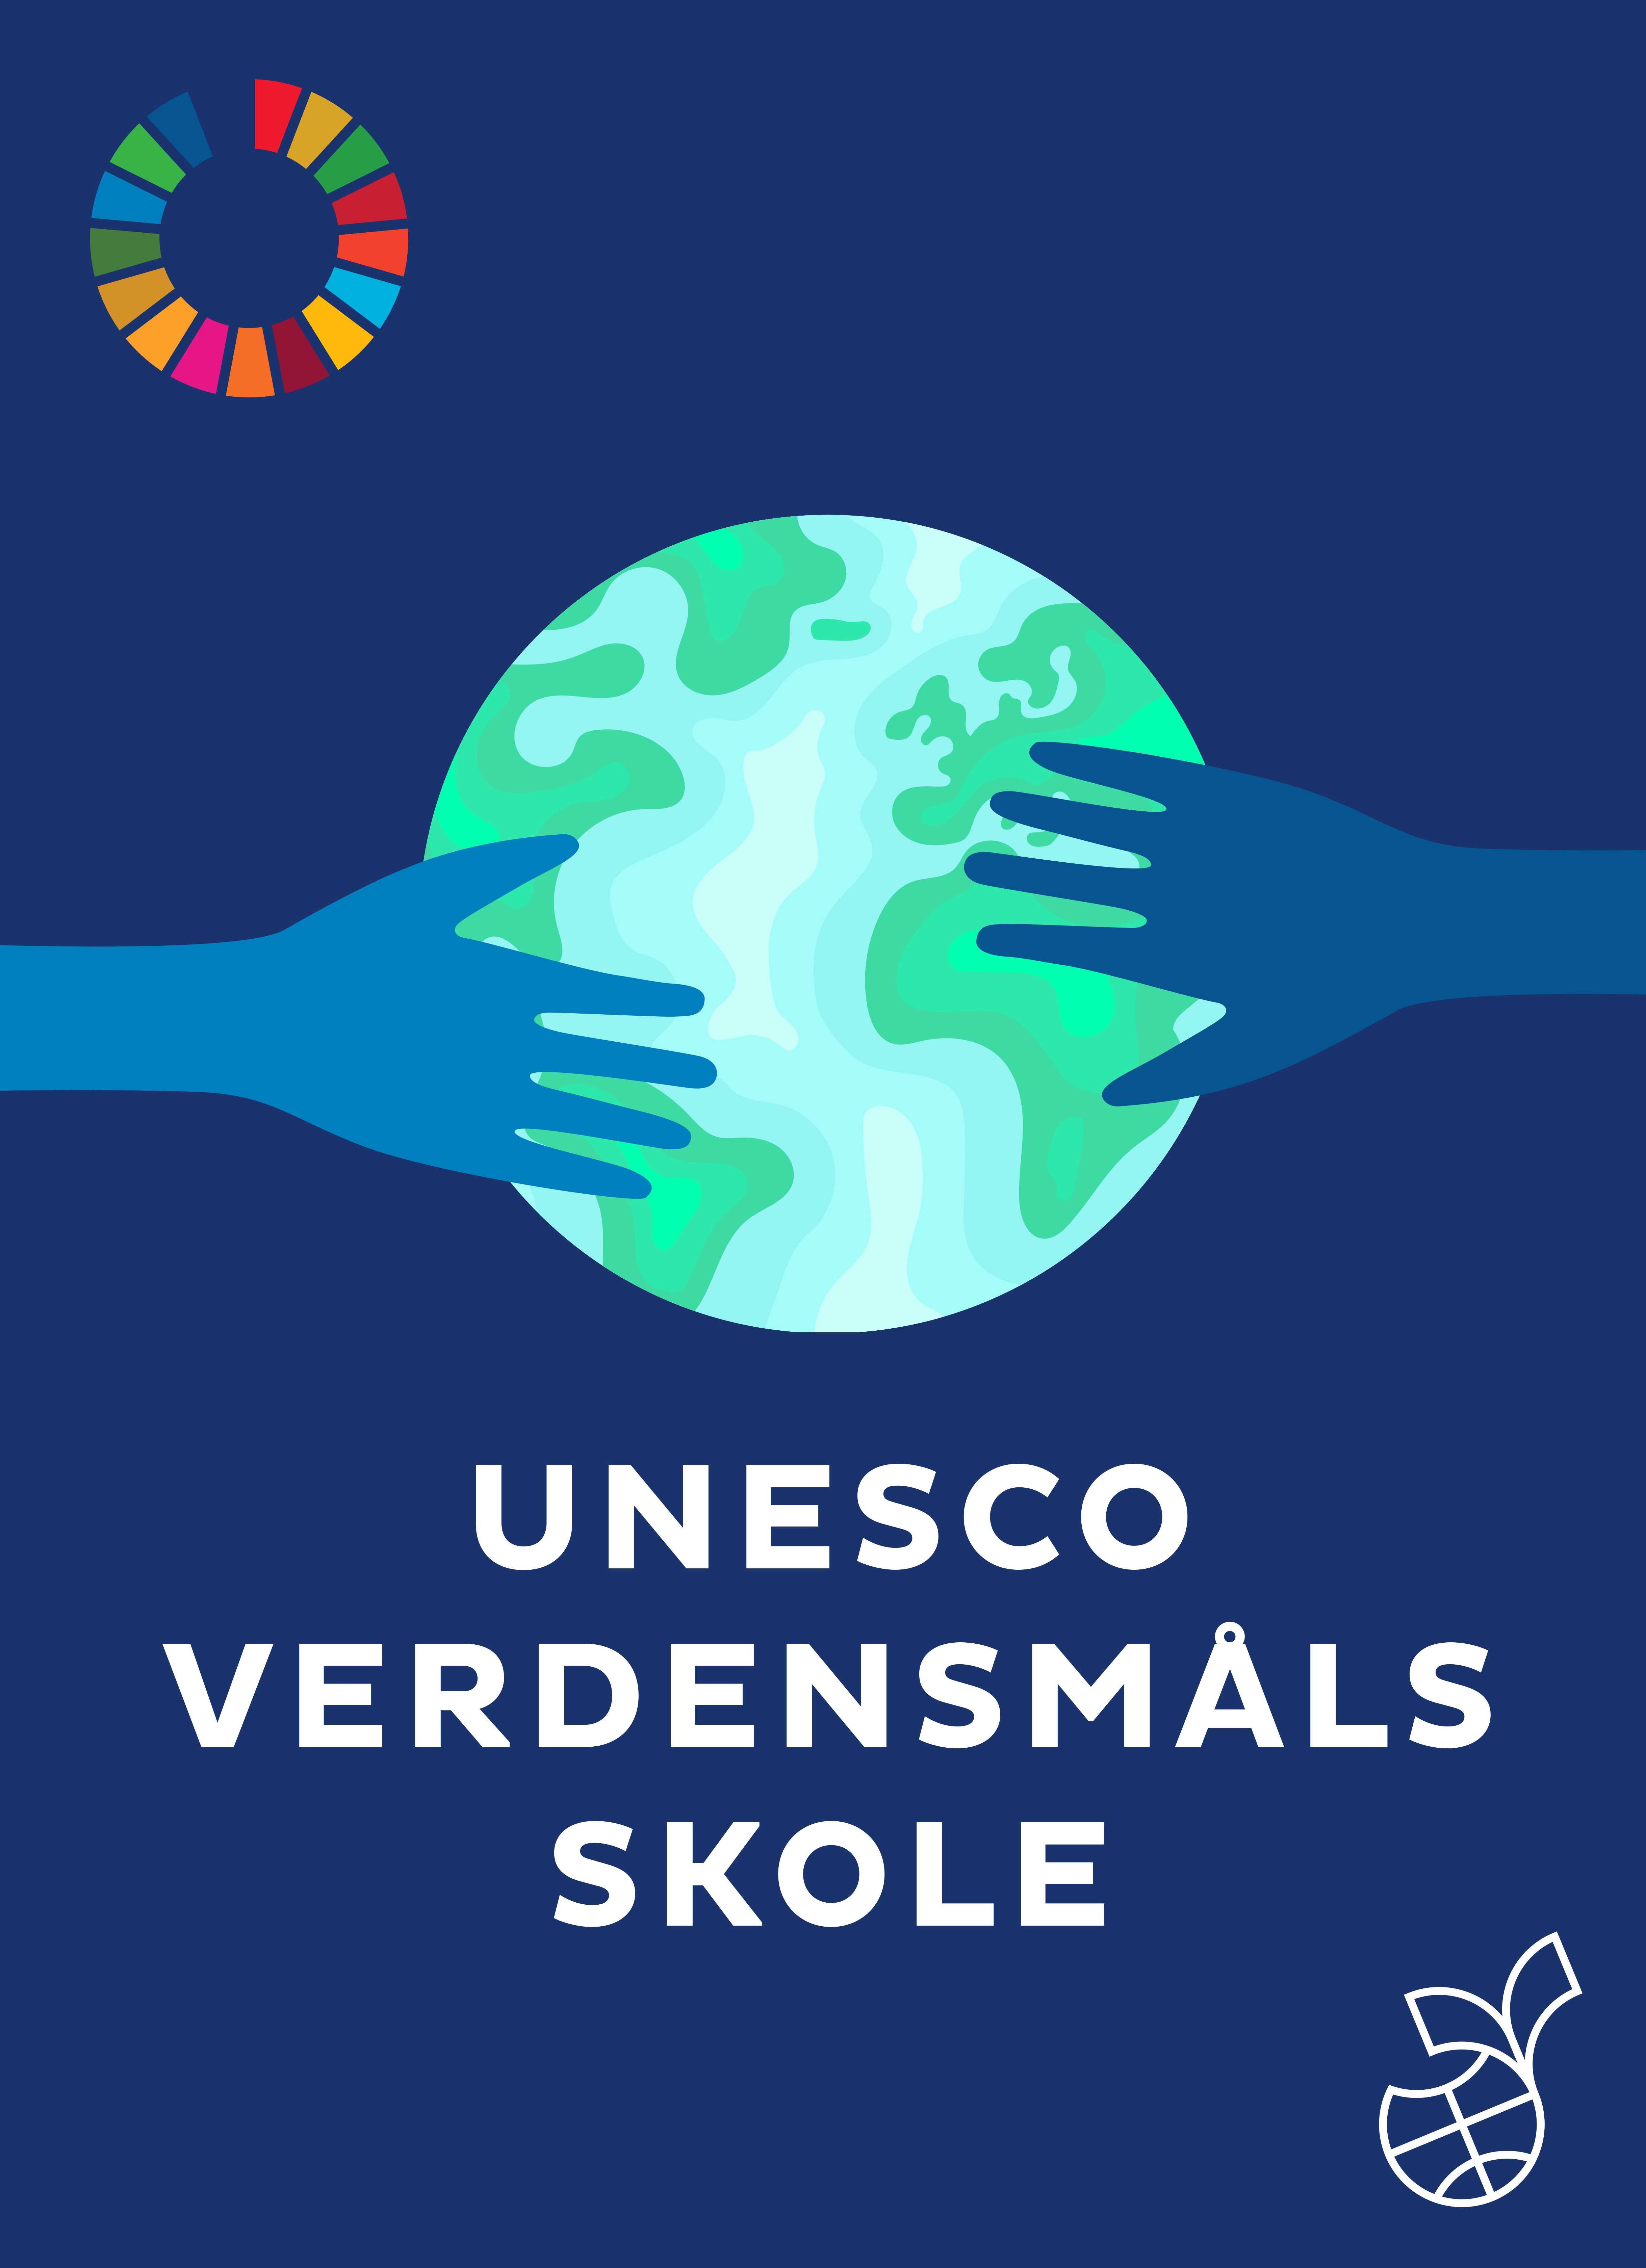 Unesco verdensmålsskole